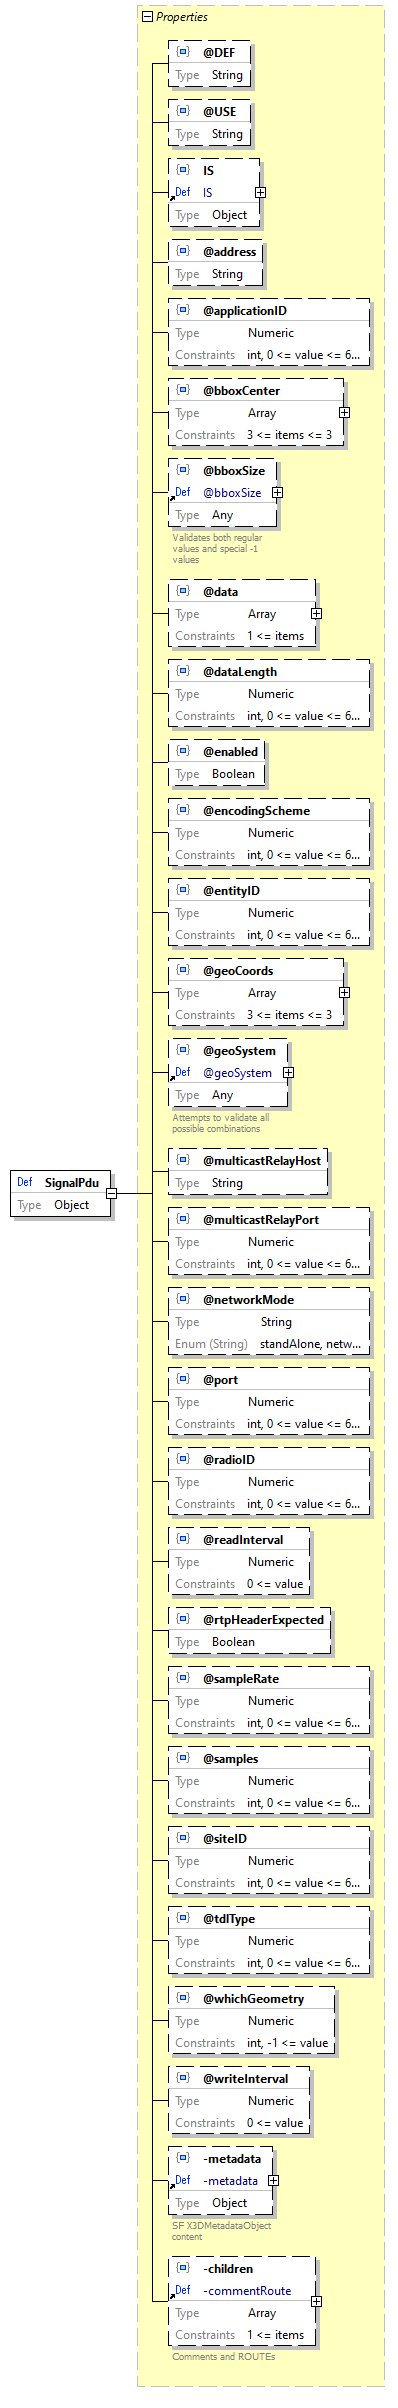 x3d-3.3-JSONSchema_diagrams/x3d-3.3-JSONSchema_p2797.png